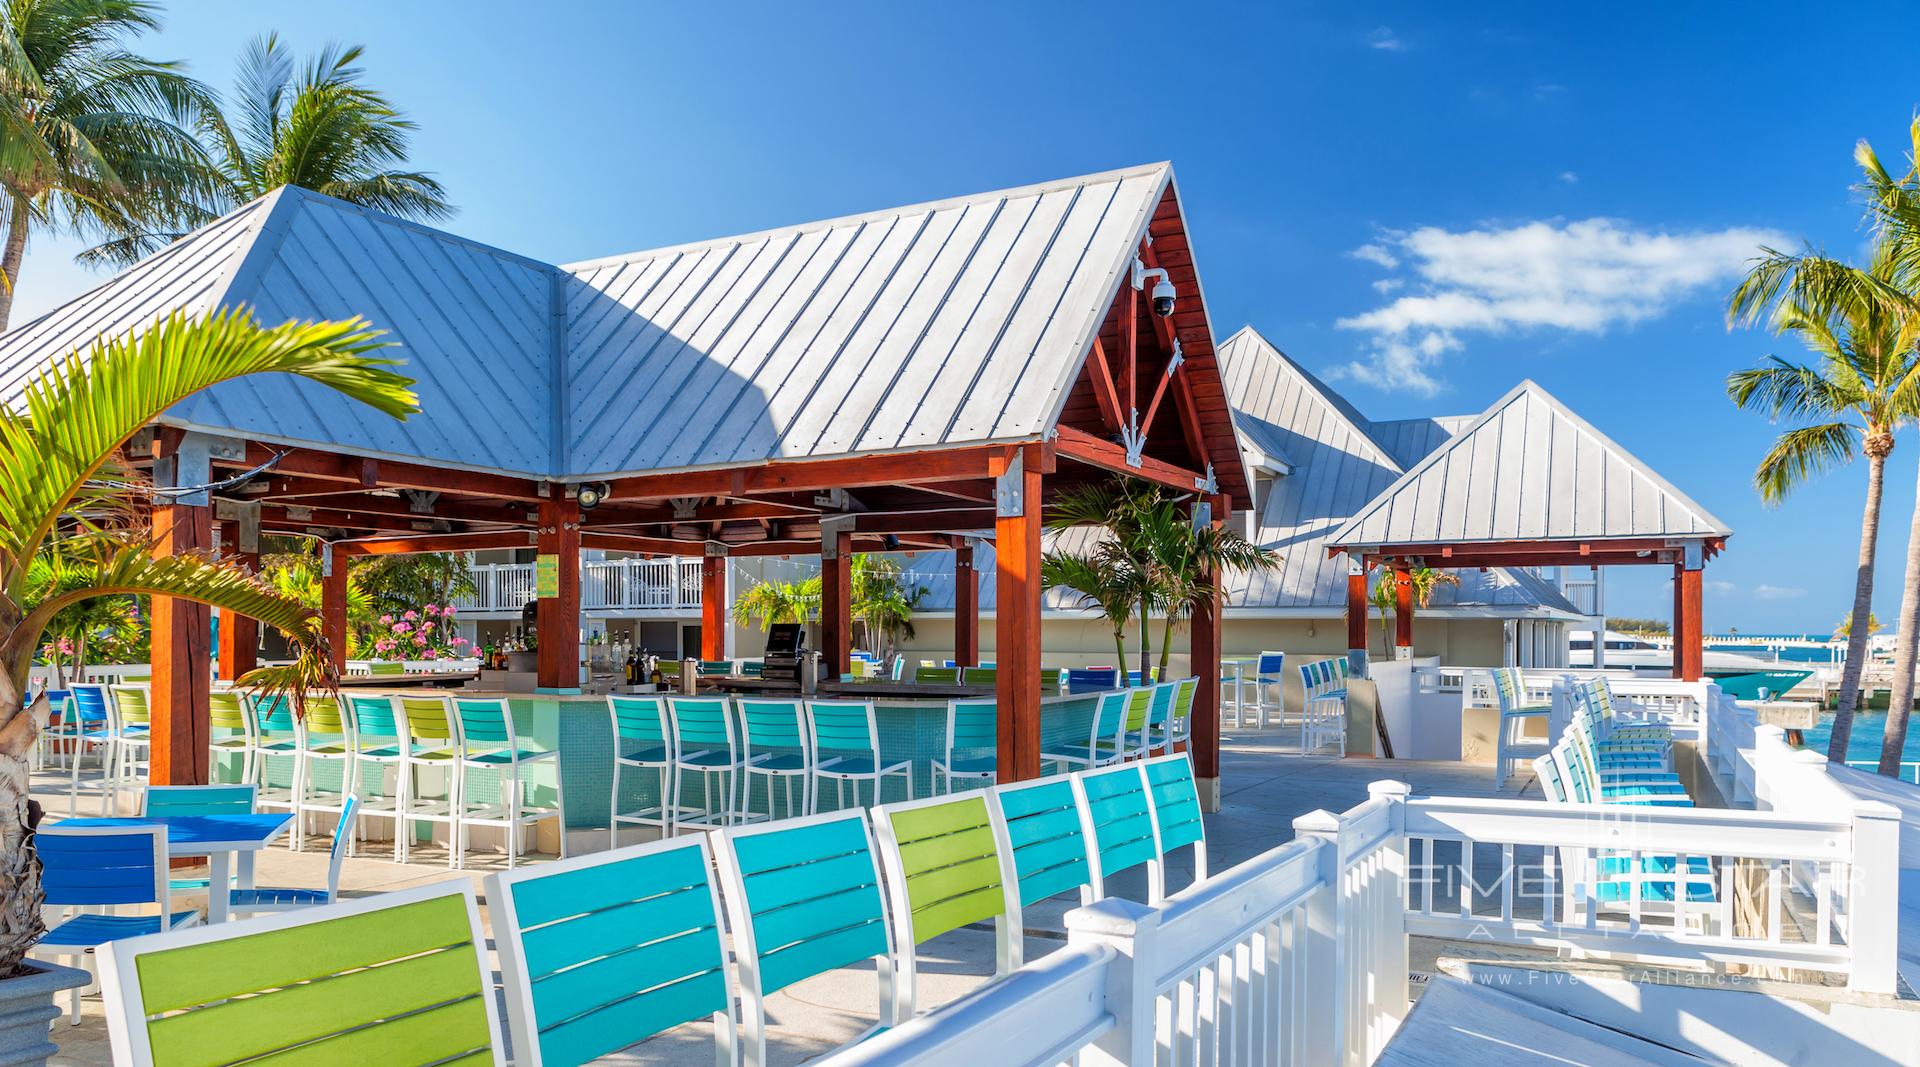 Opal Resort Key West Dock Bar